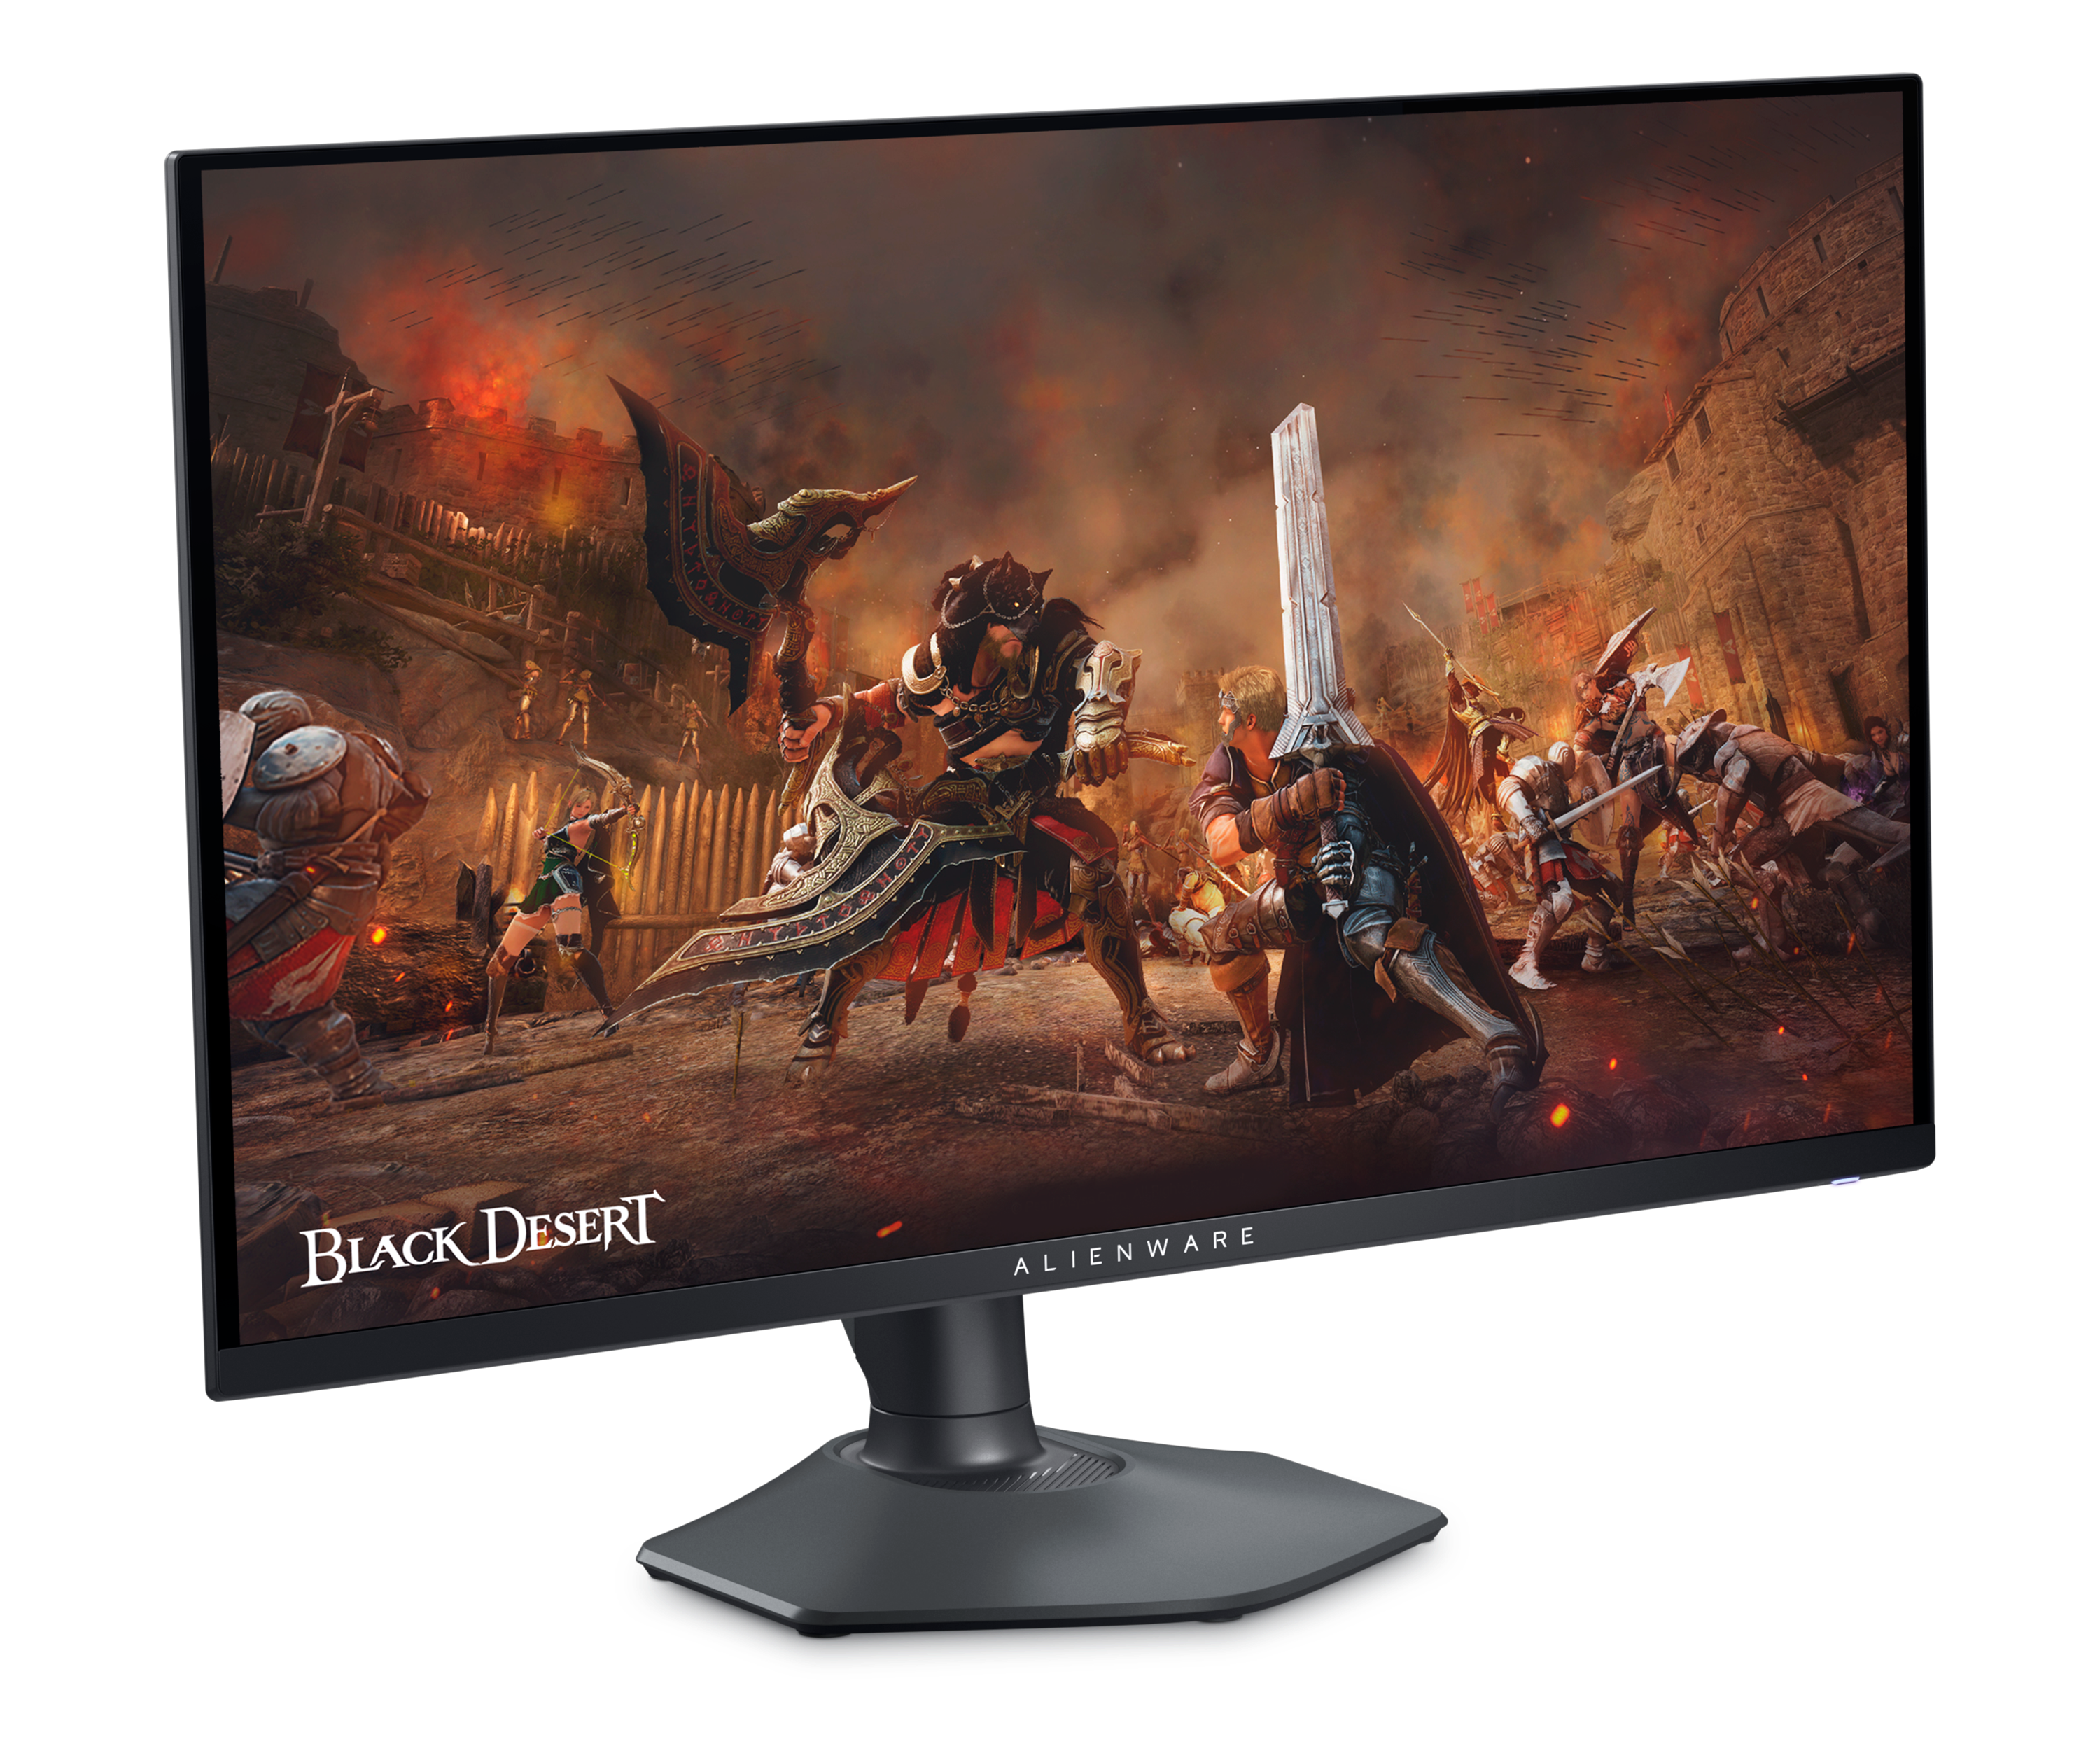 Dell AW2725DF-gamingskærm med et spilbillede fra spillet Black Desert på skærmen.